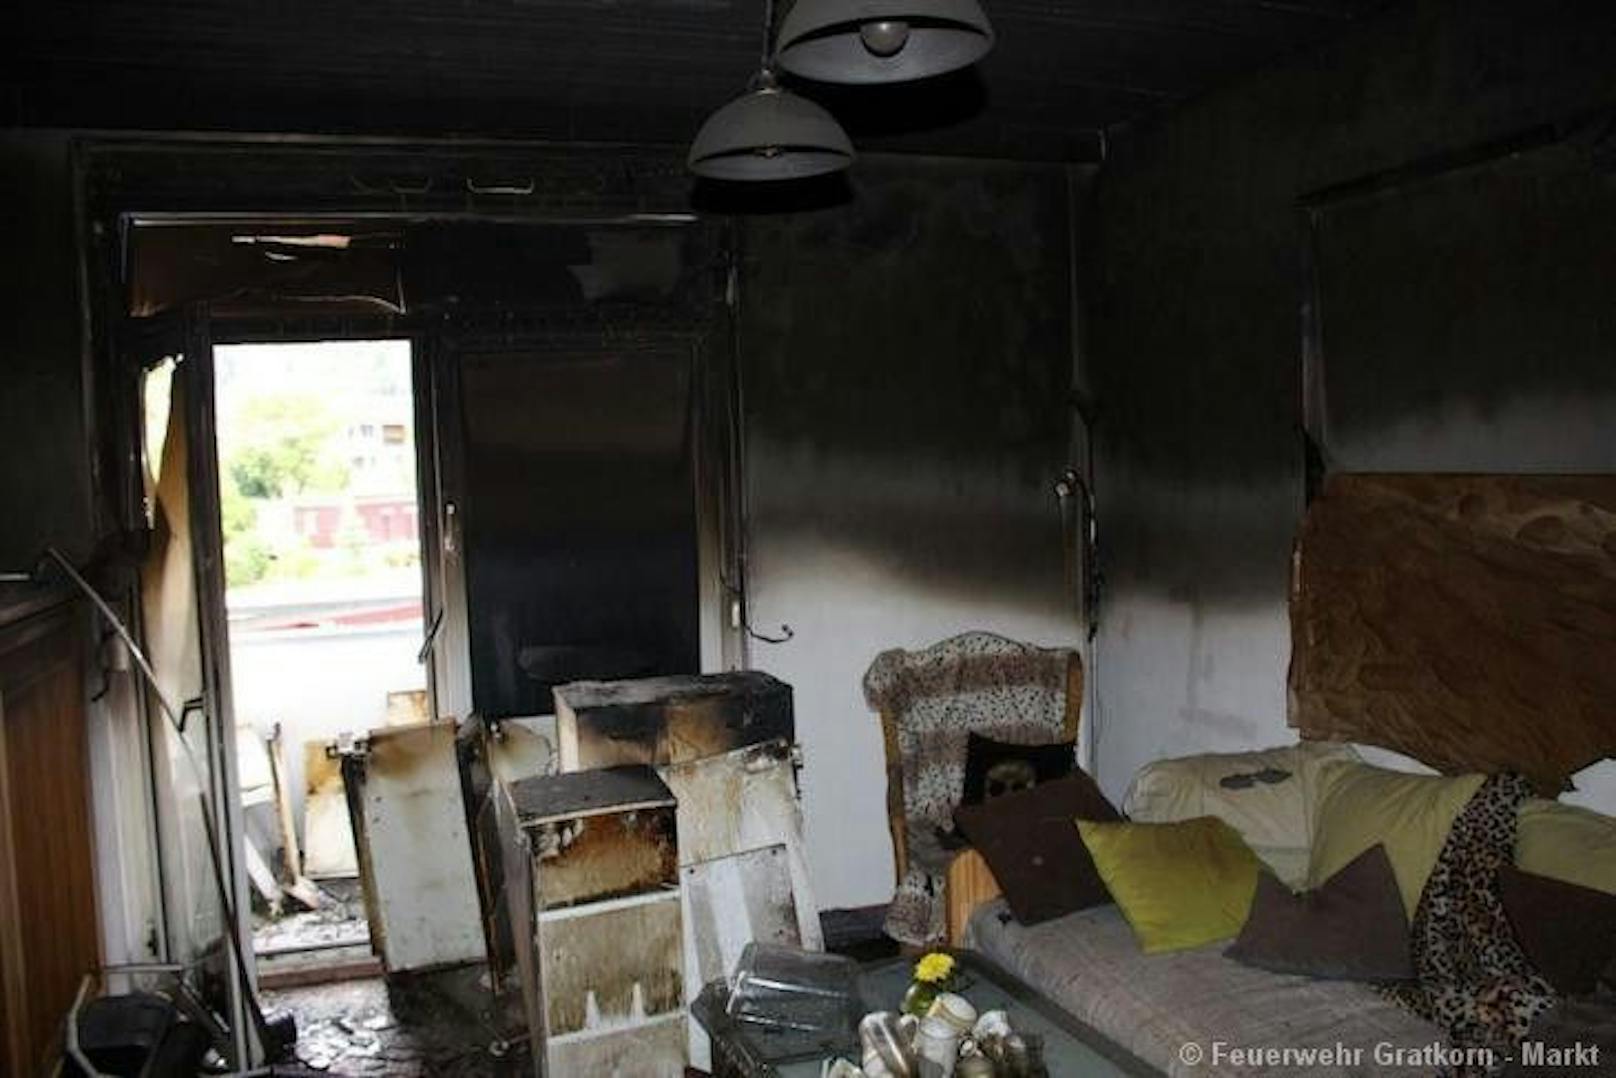 Die Bewohner hatten die Wohnung noch vor Eintreffen der Feuerwehr verlassen können.